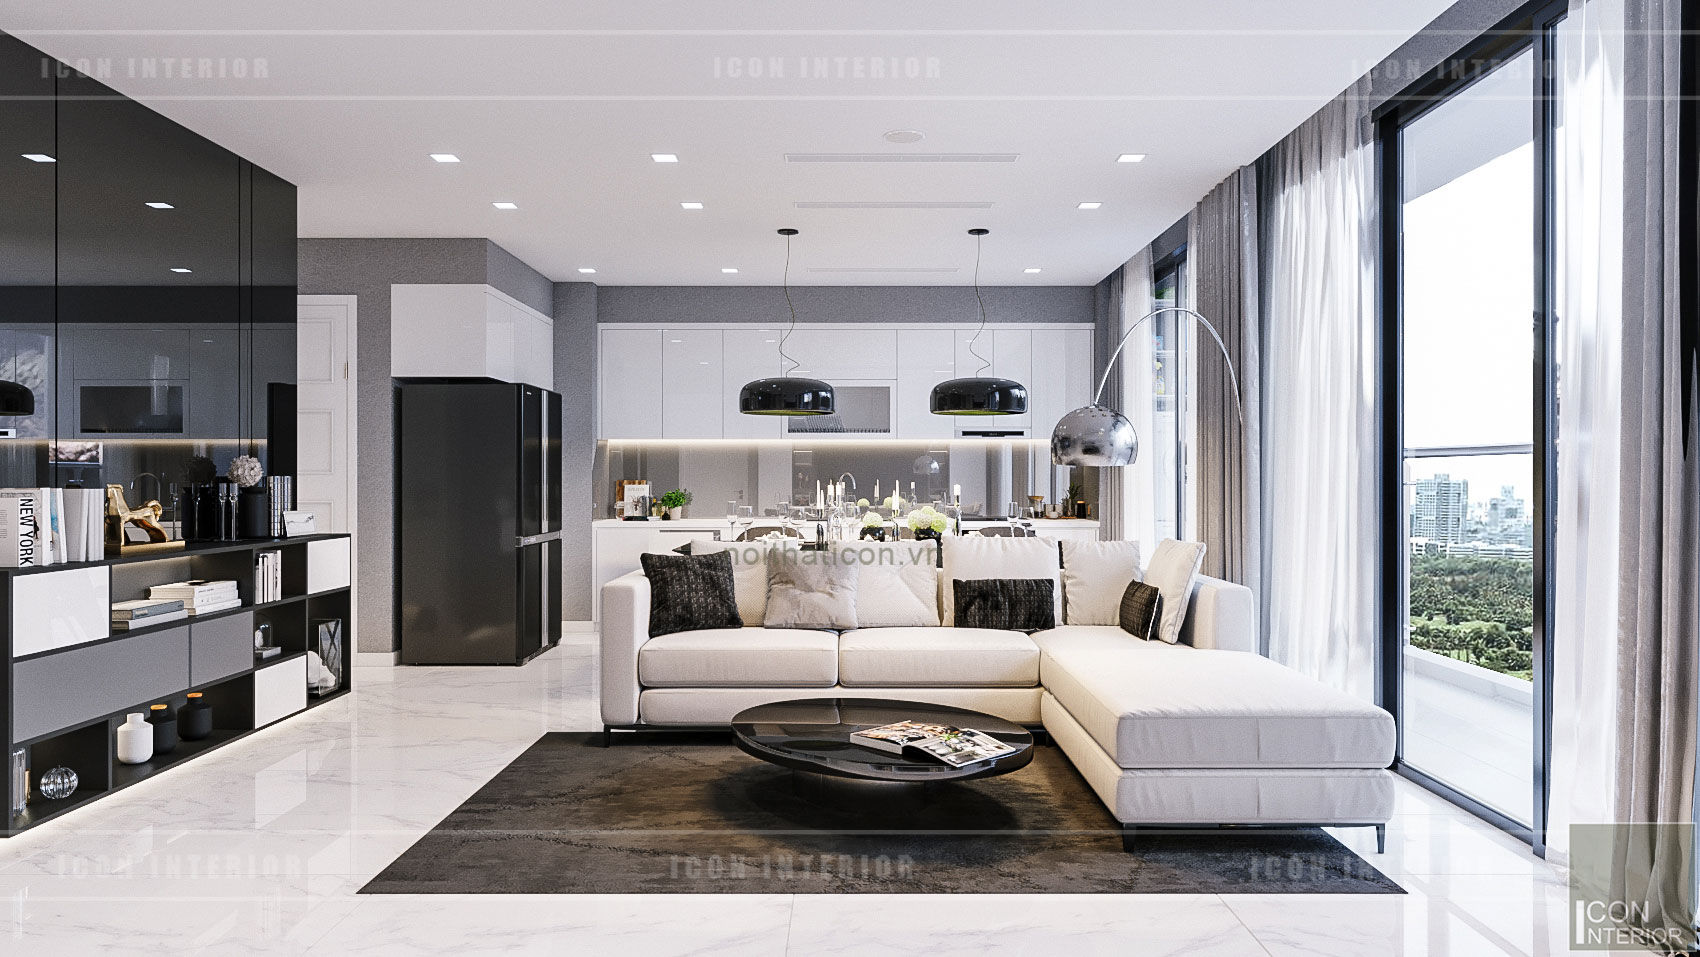 VẺ ĐẸP CĂN HỘ VINHOMES VỚI THIẾT KẾ HIỆN ĐẠI NỔI BẬT, ICON INTERIOR ICON INTERIOR Modern living room